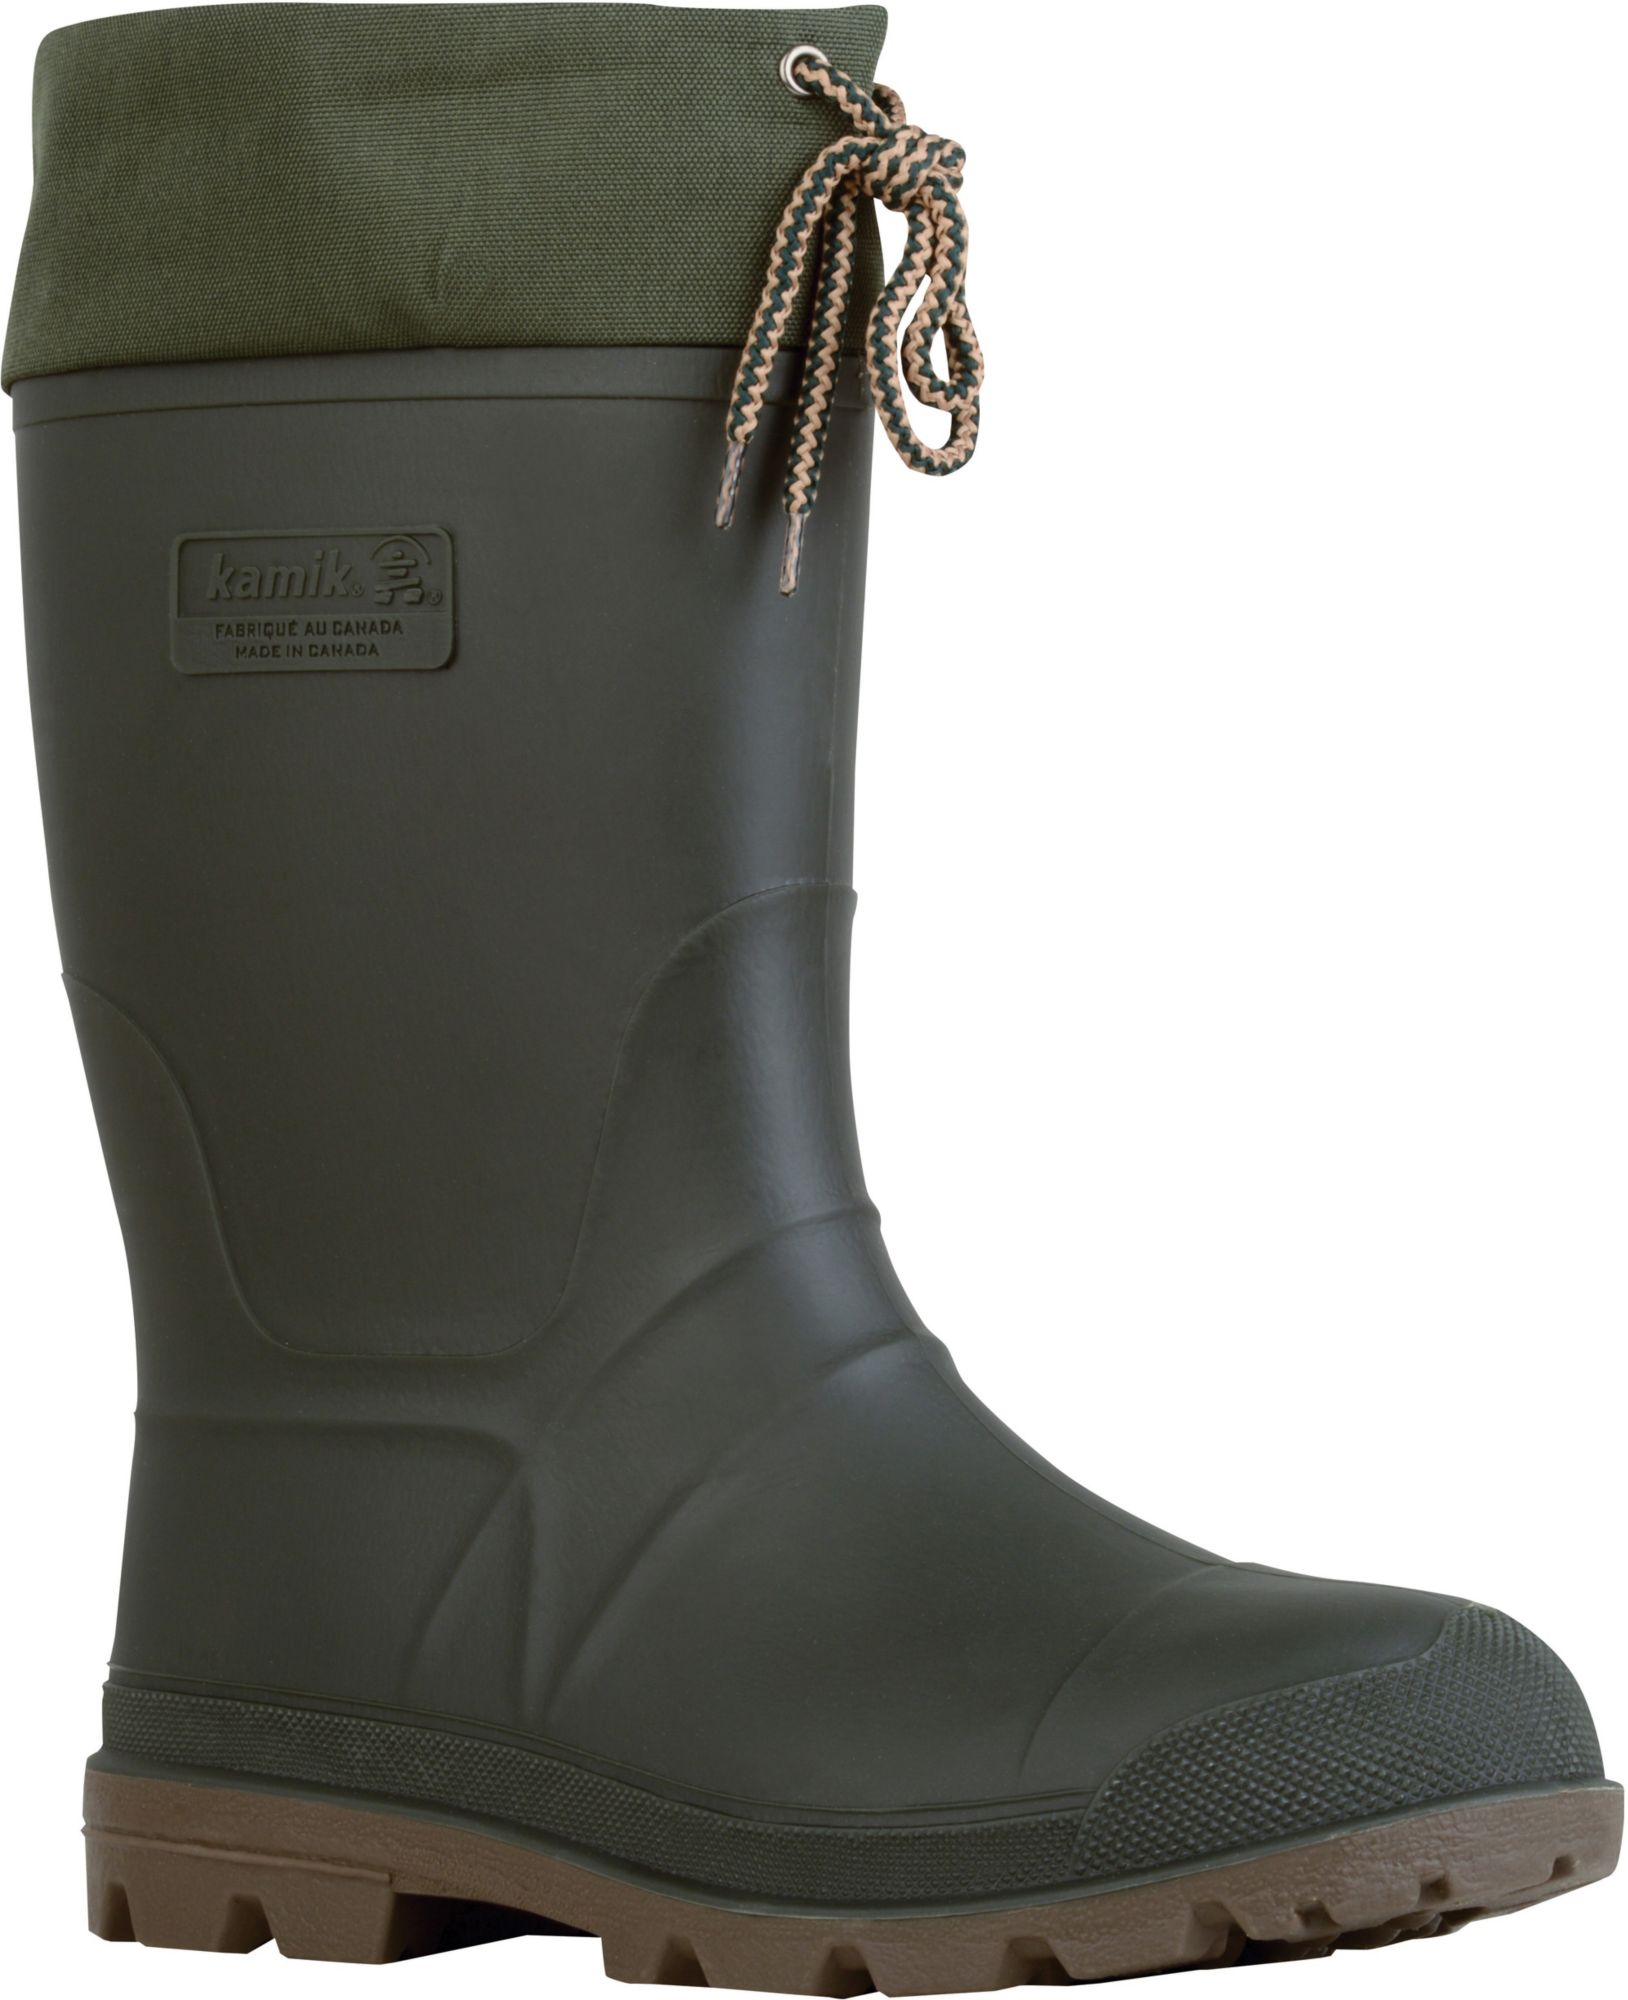 winter rain boots canada